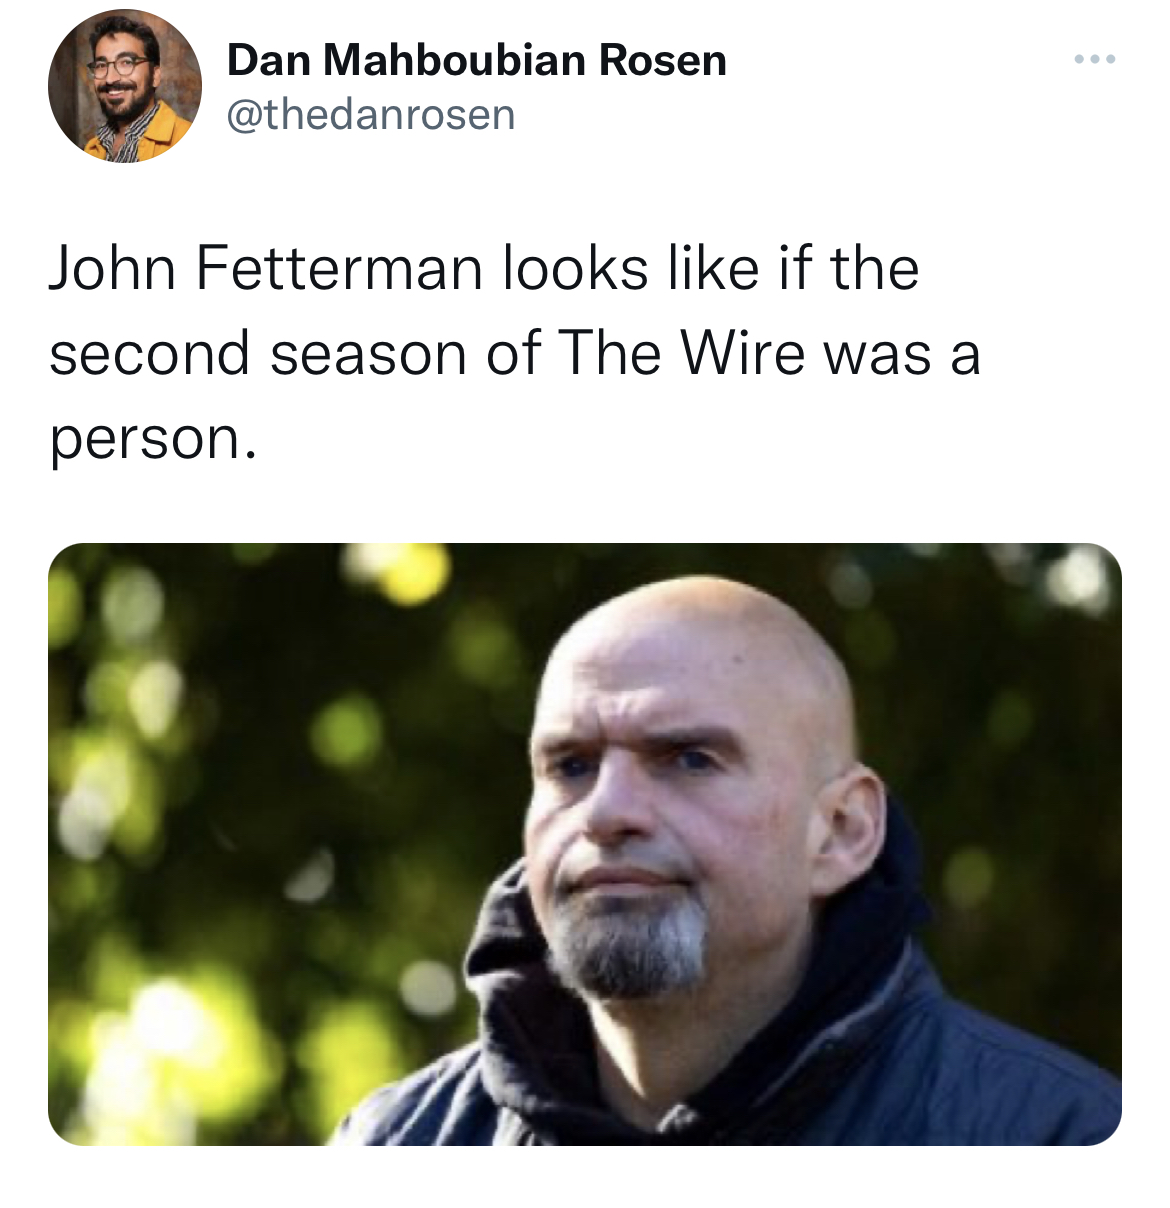 fetterman debate - Dan Mahboubian Rosen John Fetterman looks if the second season of The Wire was a person.